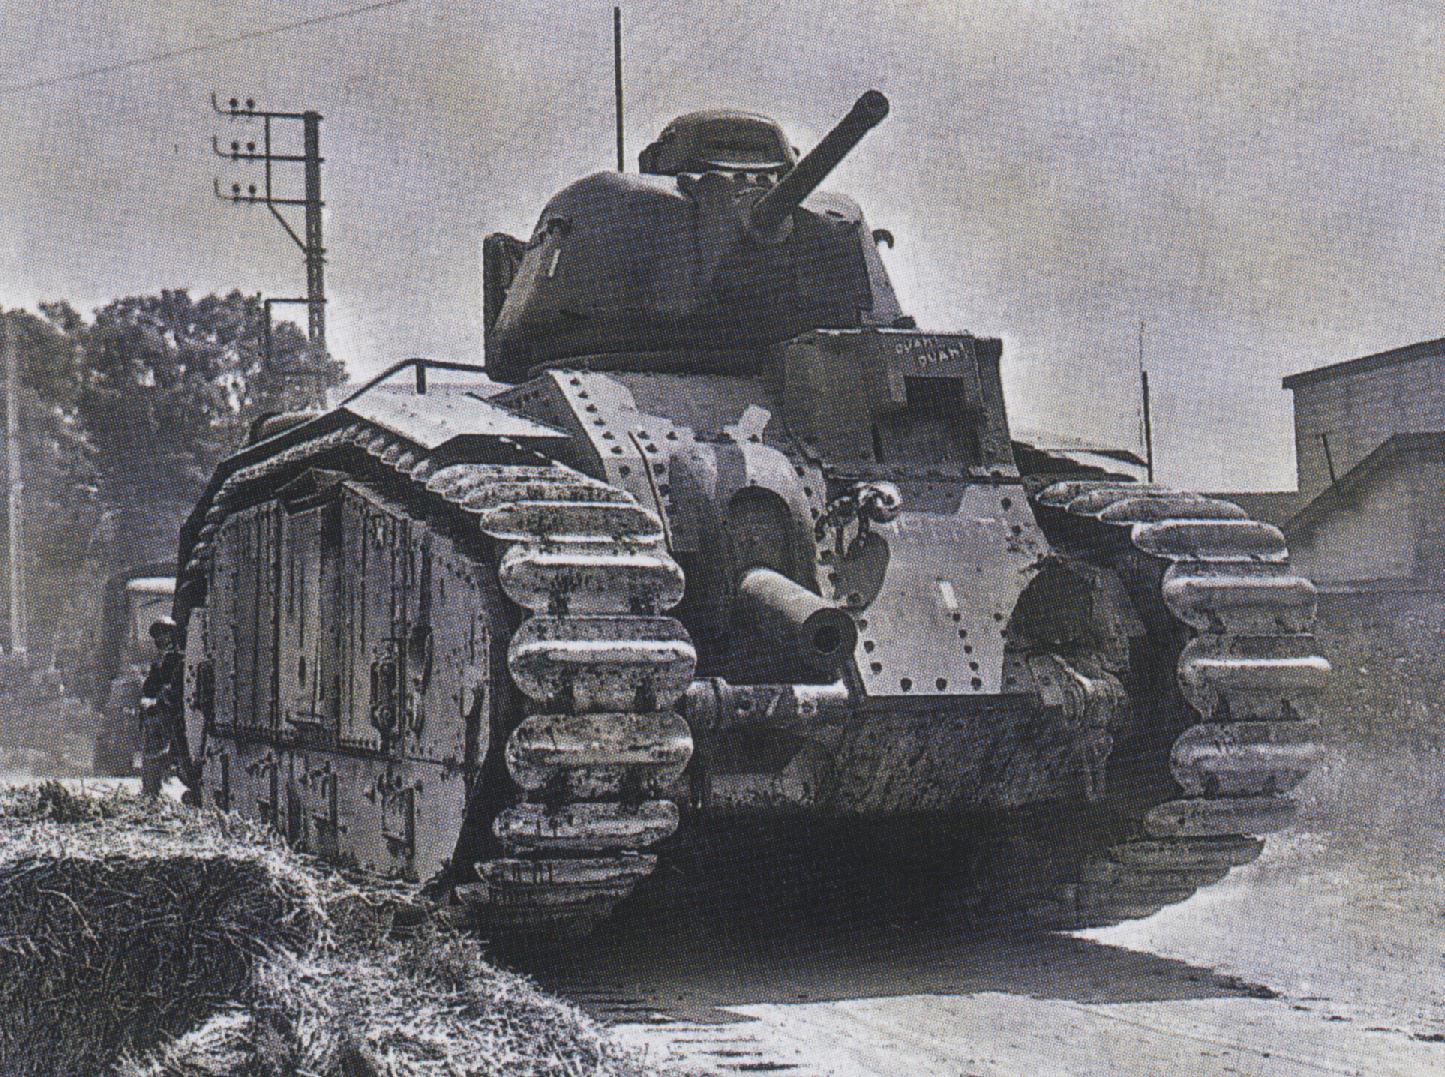 Тяжелый танк времен войны. Тяжелый французский танк Char b1. Французский танк в1 второй мировой войны. Французский танк b1 bis. Char b1 bis танк.